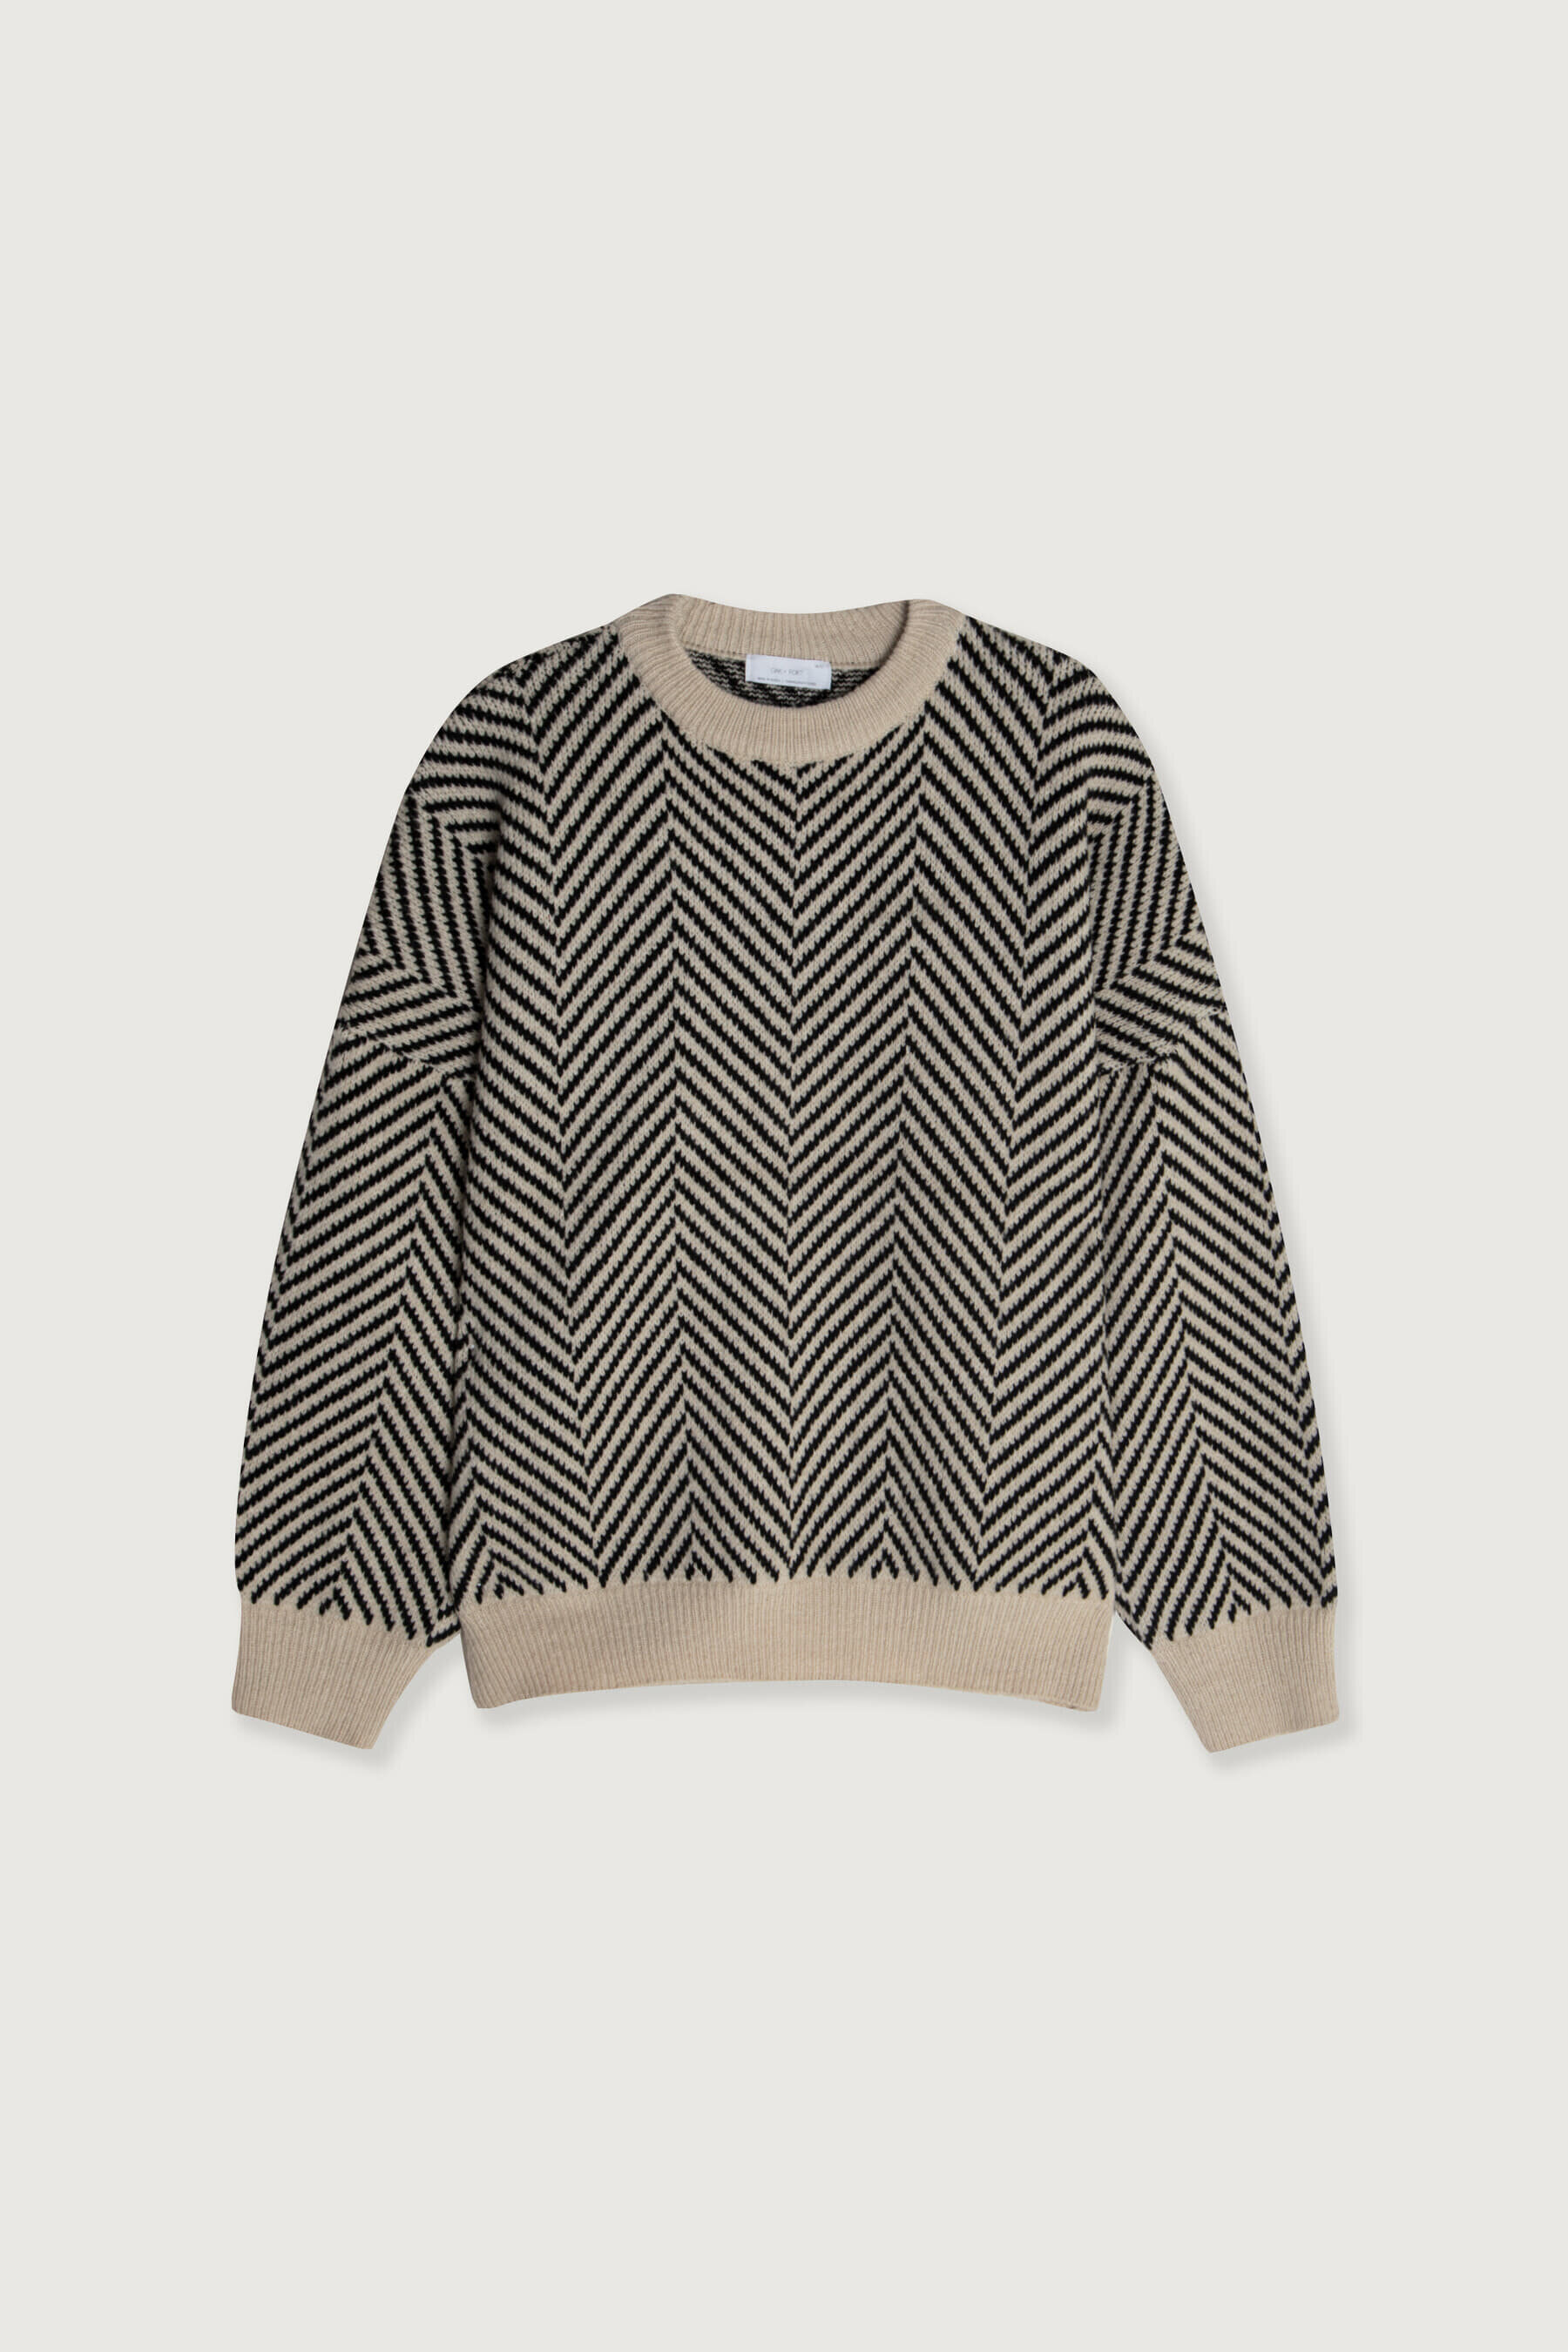 Sweater-7196_Beige-5.jpg